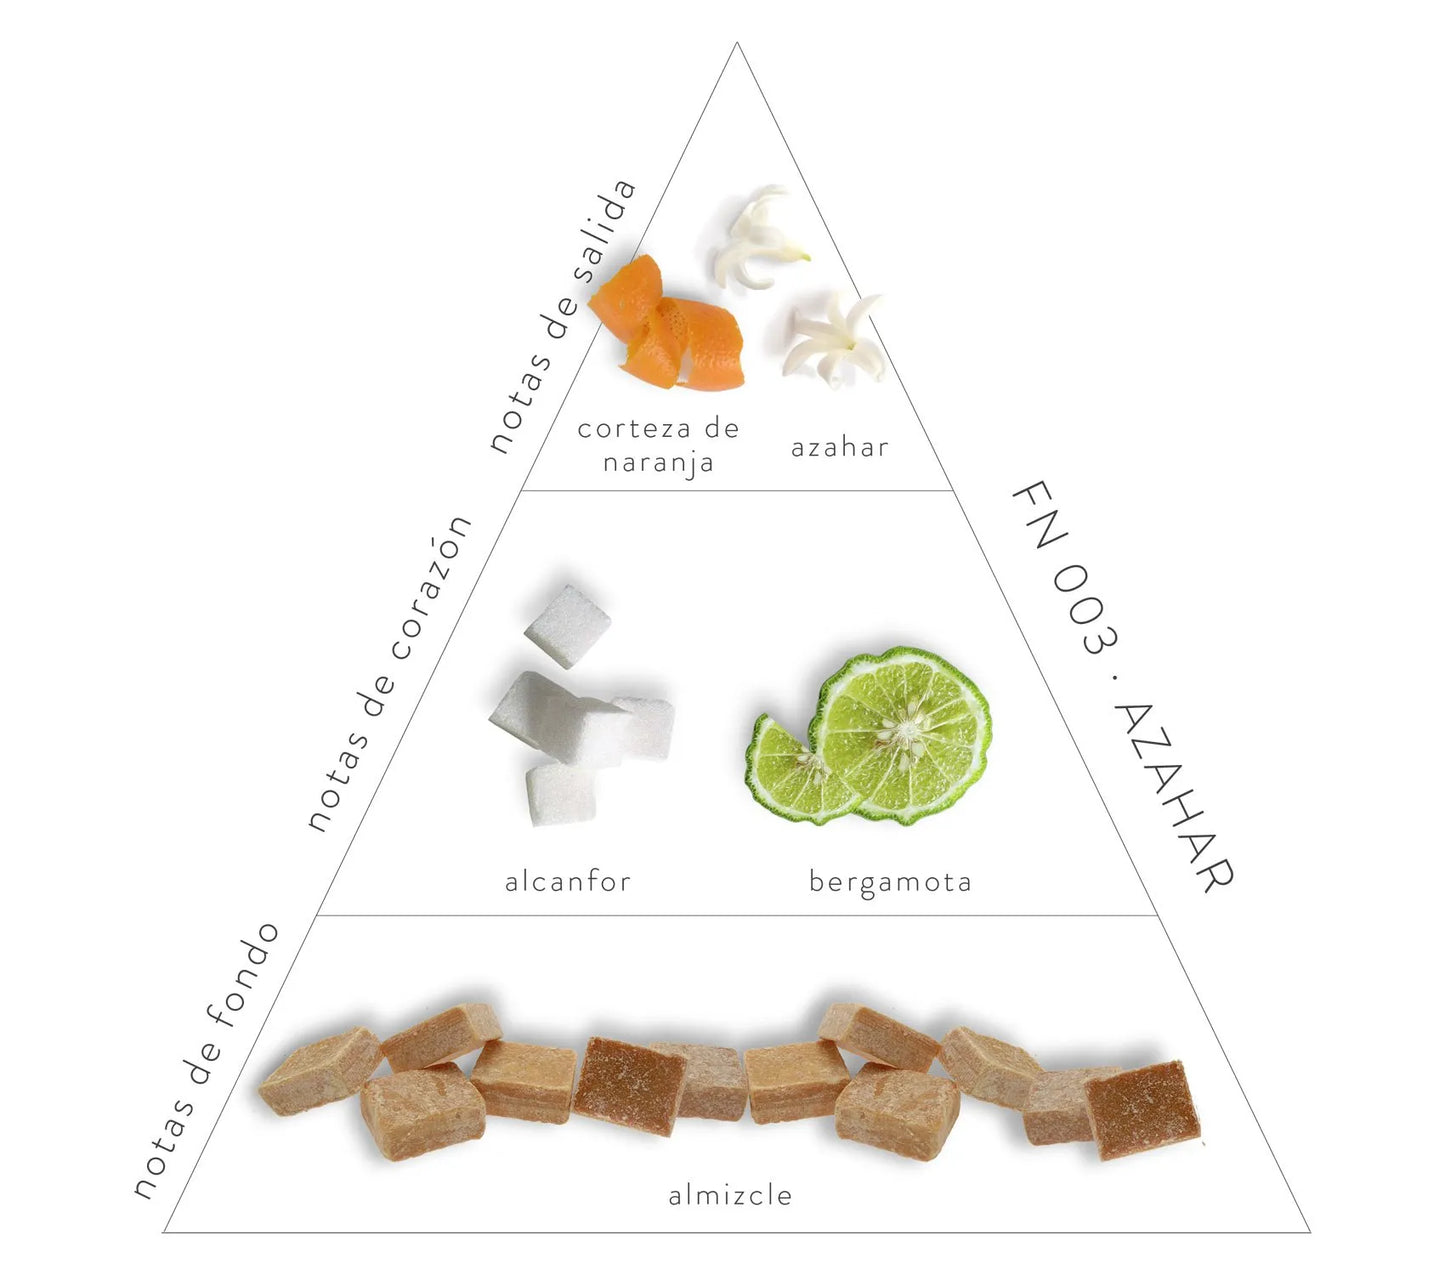 Pirámide olfativa de ambientador de Azahar; notas de salida: naranja y azahar. Notas de corazón: alcanfor y bergamota. Notas de fondo: almizcle